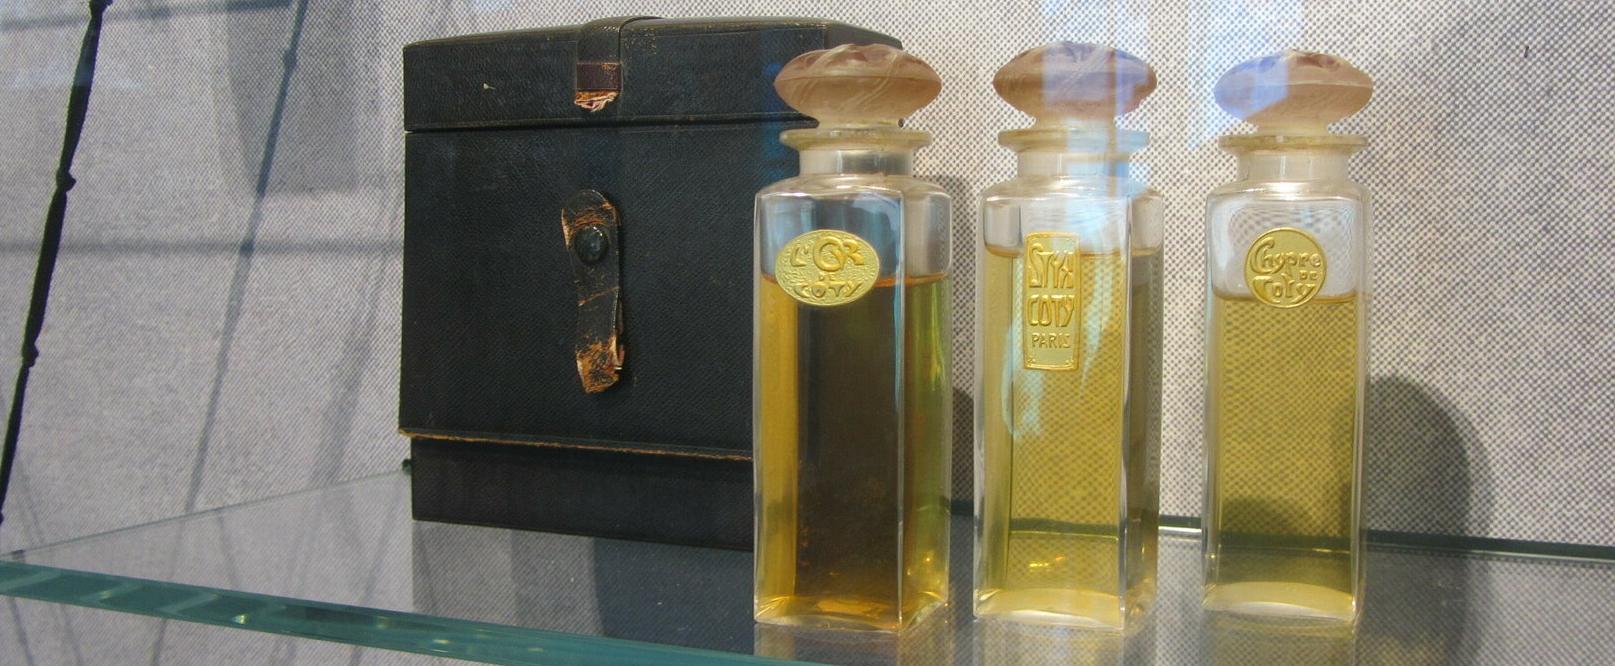 Faszinierende Flakon- und Glaskunst im niederländischen Lalique-Museum in Doesburg